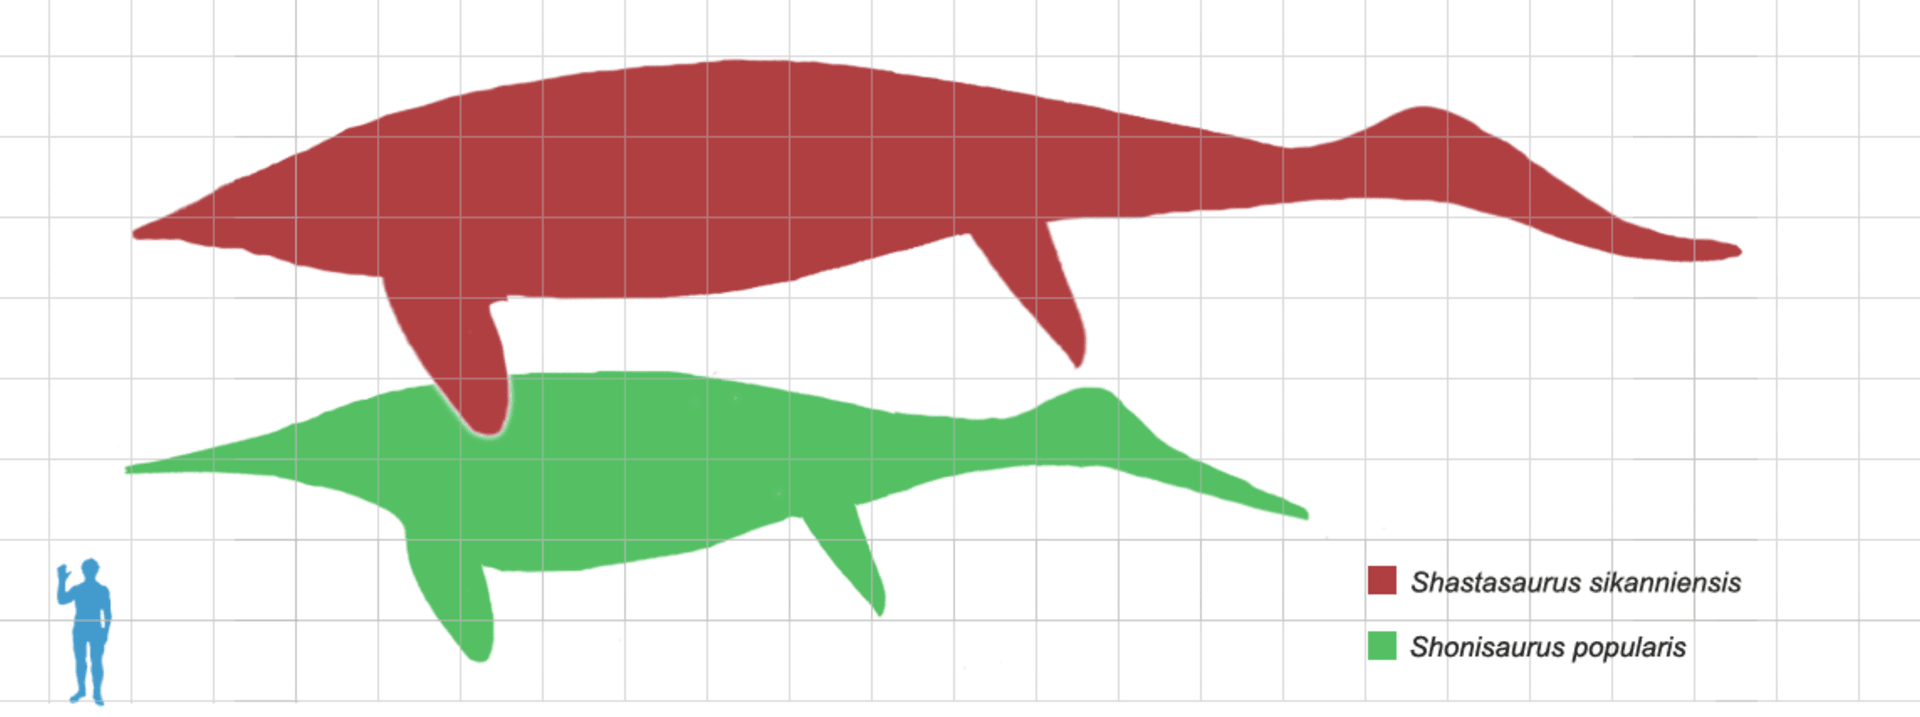 Porovnání velikosti nově objeveného ichtyosaura s člověkem